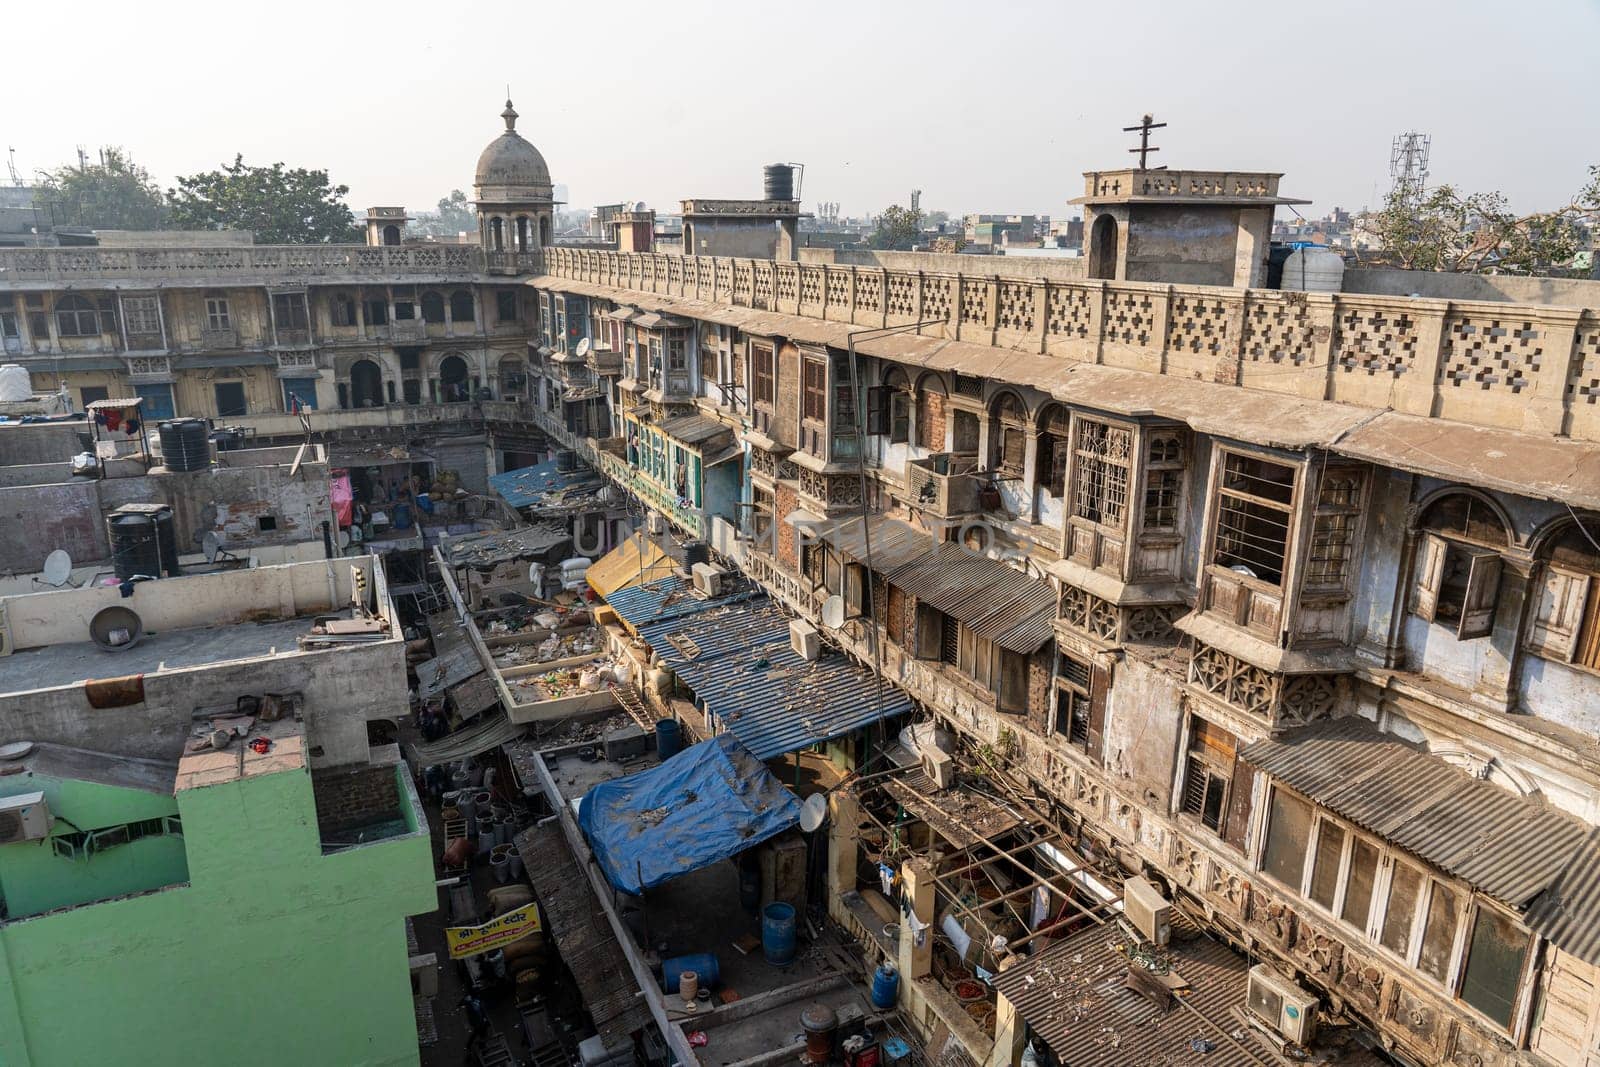 Old Delhi Spice Market Rooftop by oliverfoerstner